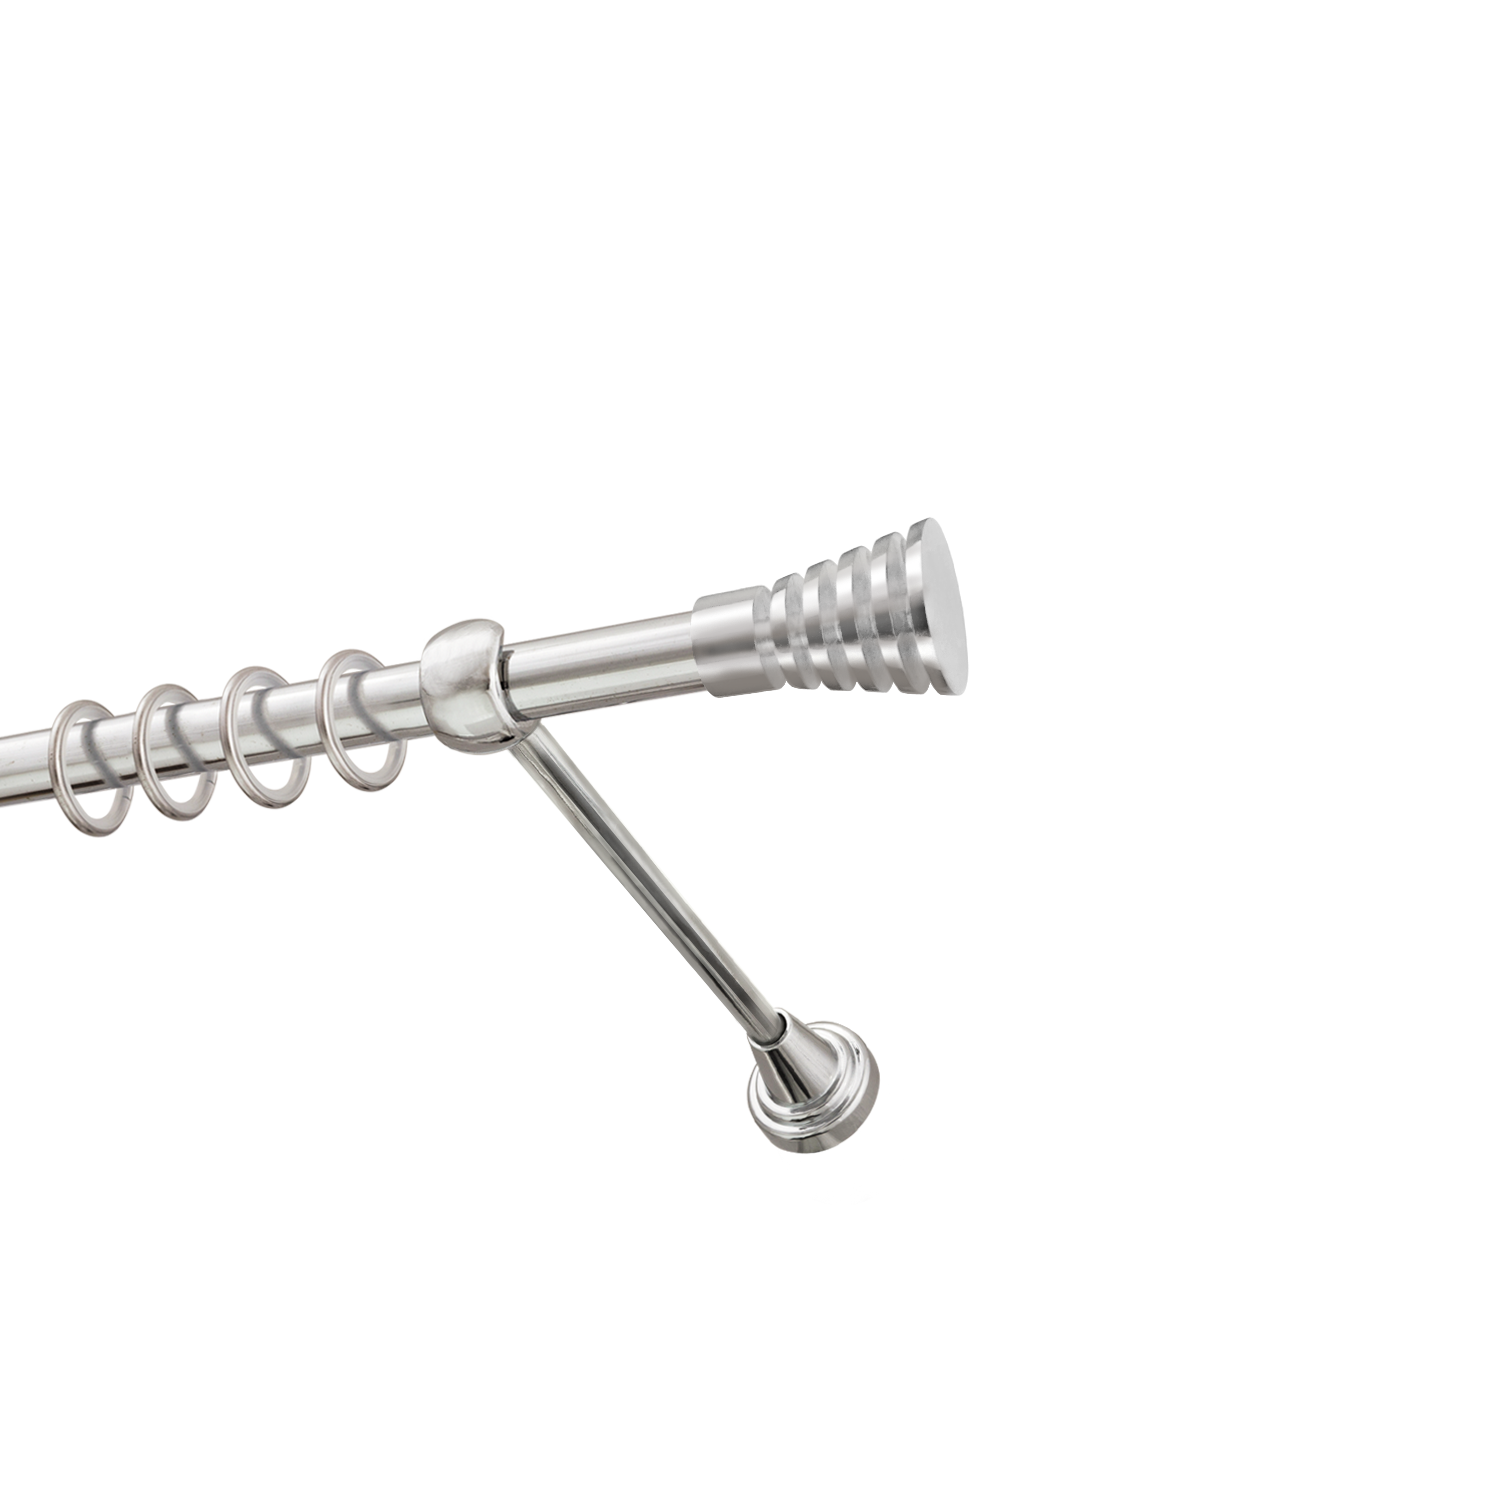 Металлический карниз для штор Верона, однорядный 16 мм, серебро, гладкая штанга, длина 180 см - фото Wikidecor.ru